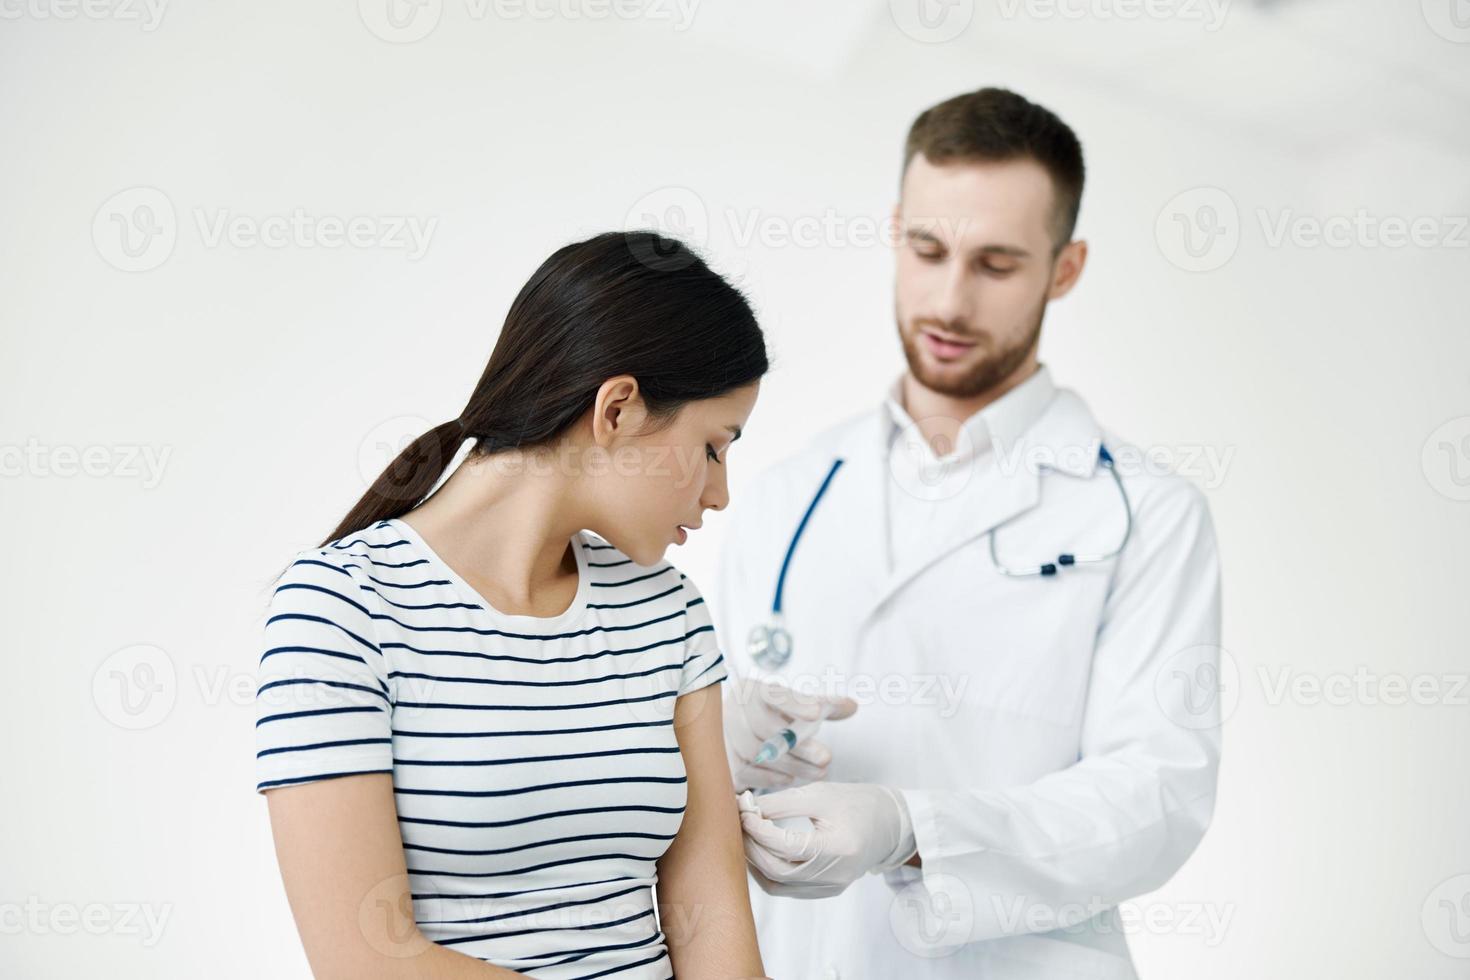 Masculin médecin donnant un injection à une patient dans une hôpital vaccination photo